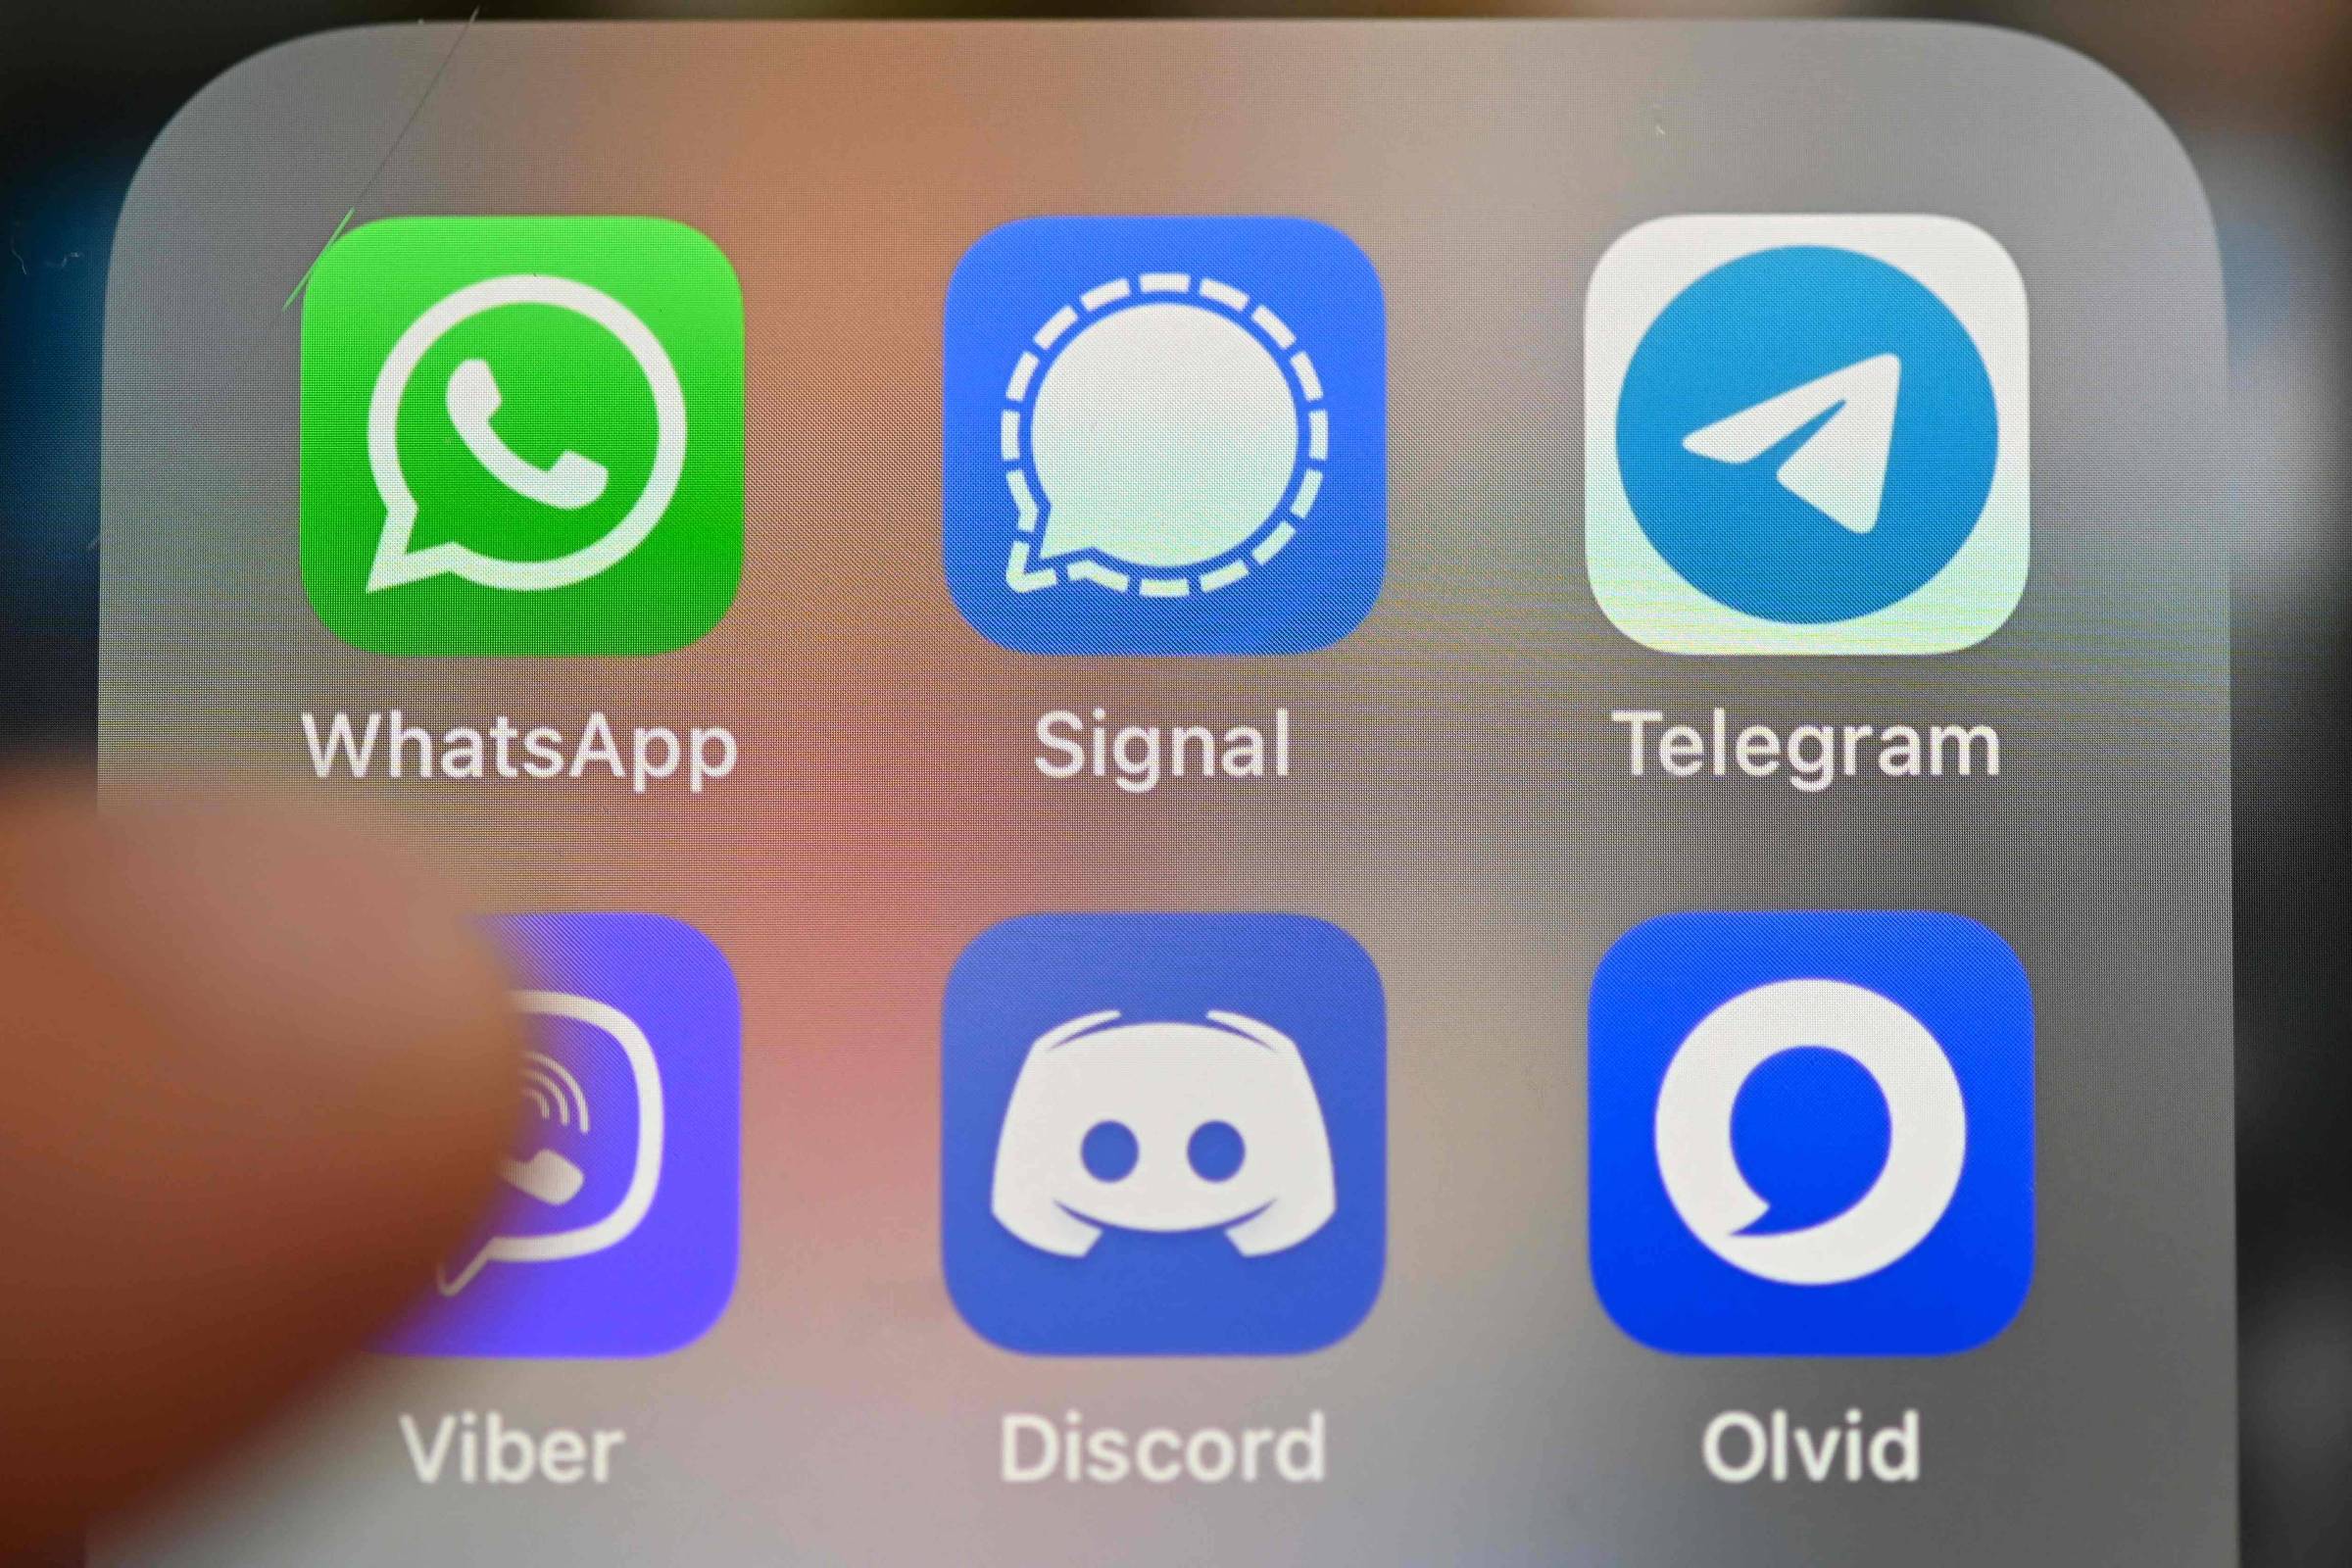 Conheça o Discord, app de comunicação que pode valer 7 bi de dólares